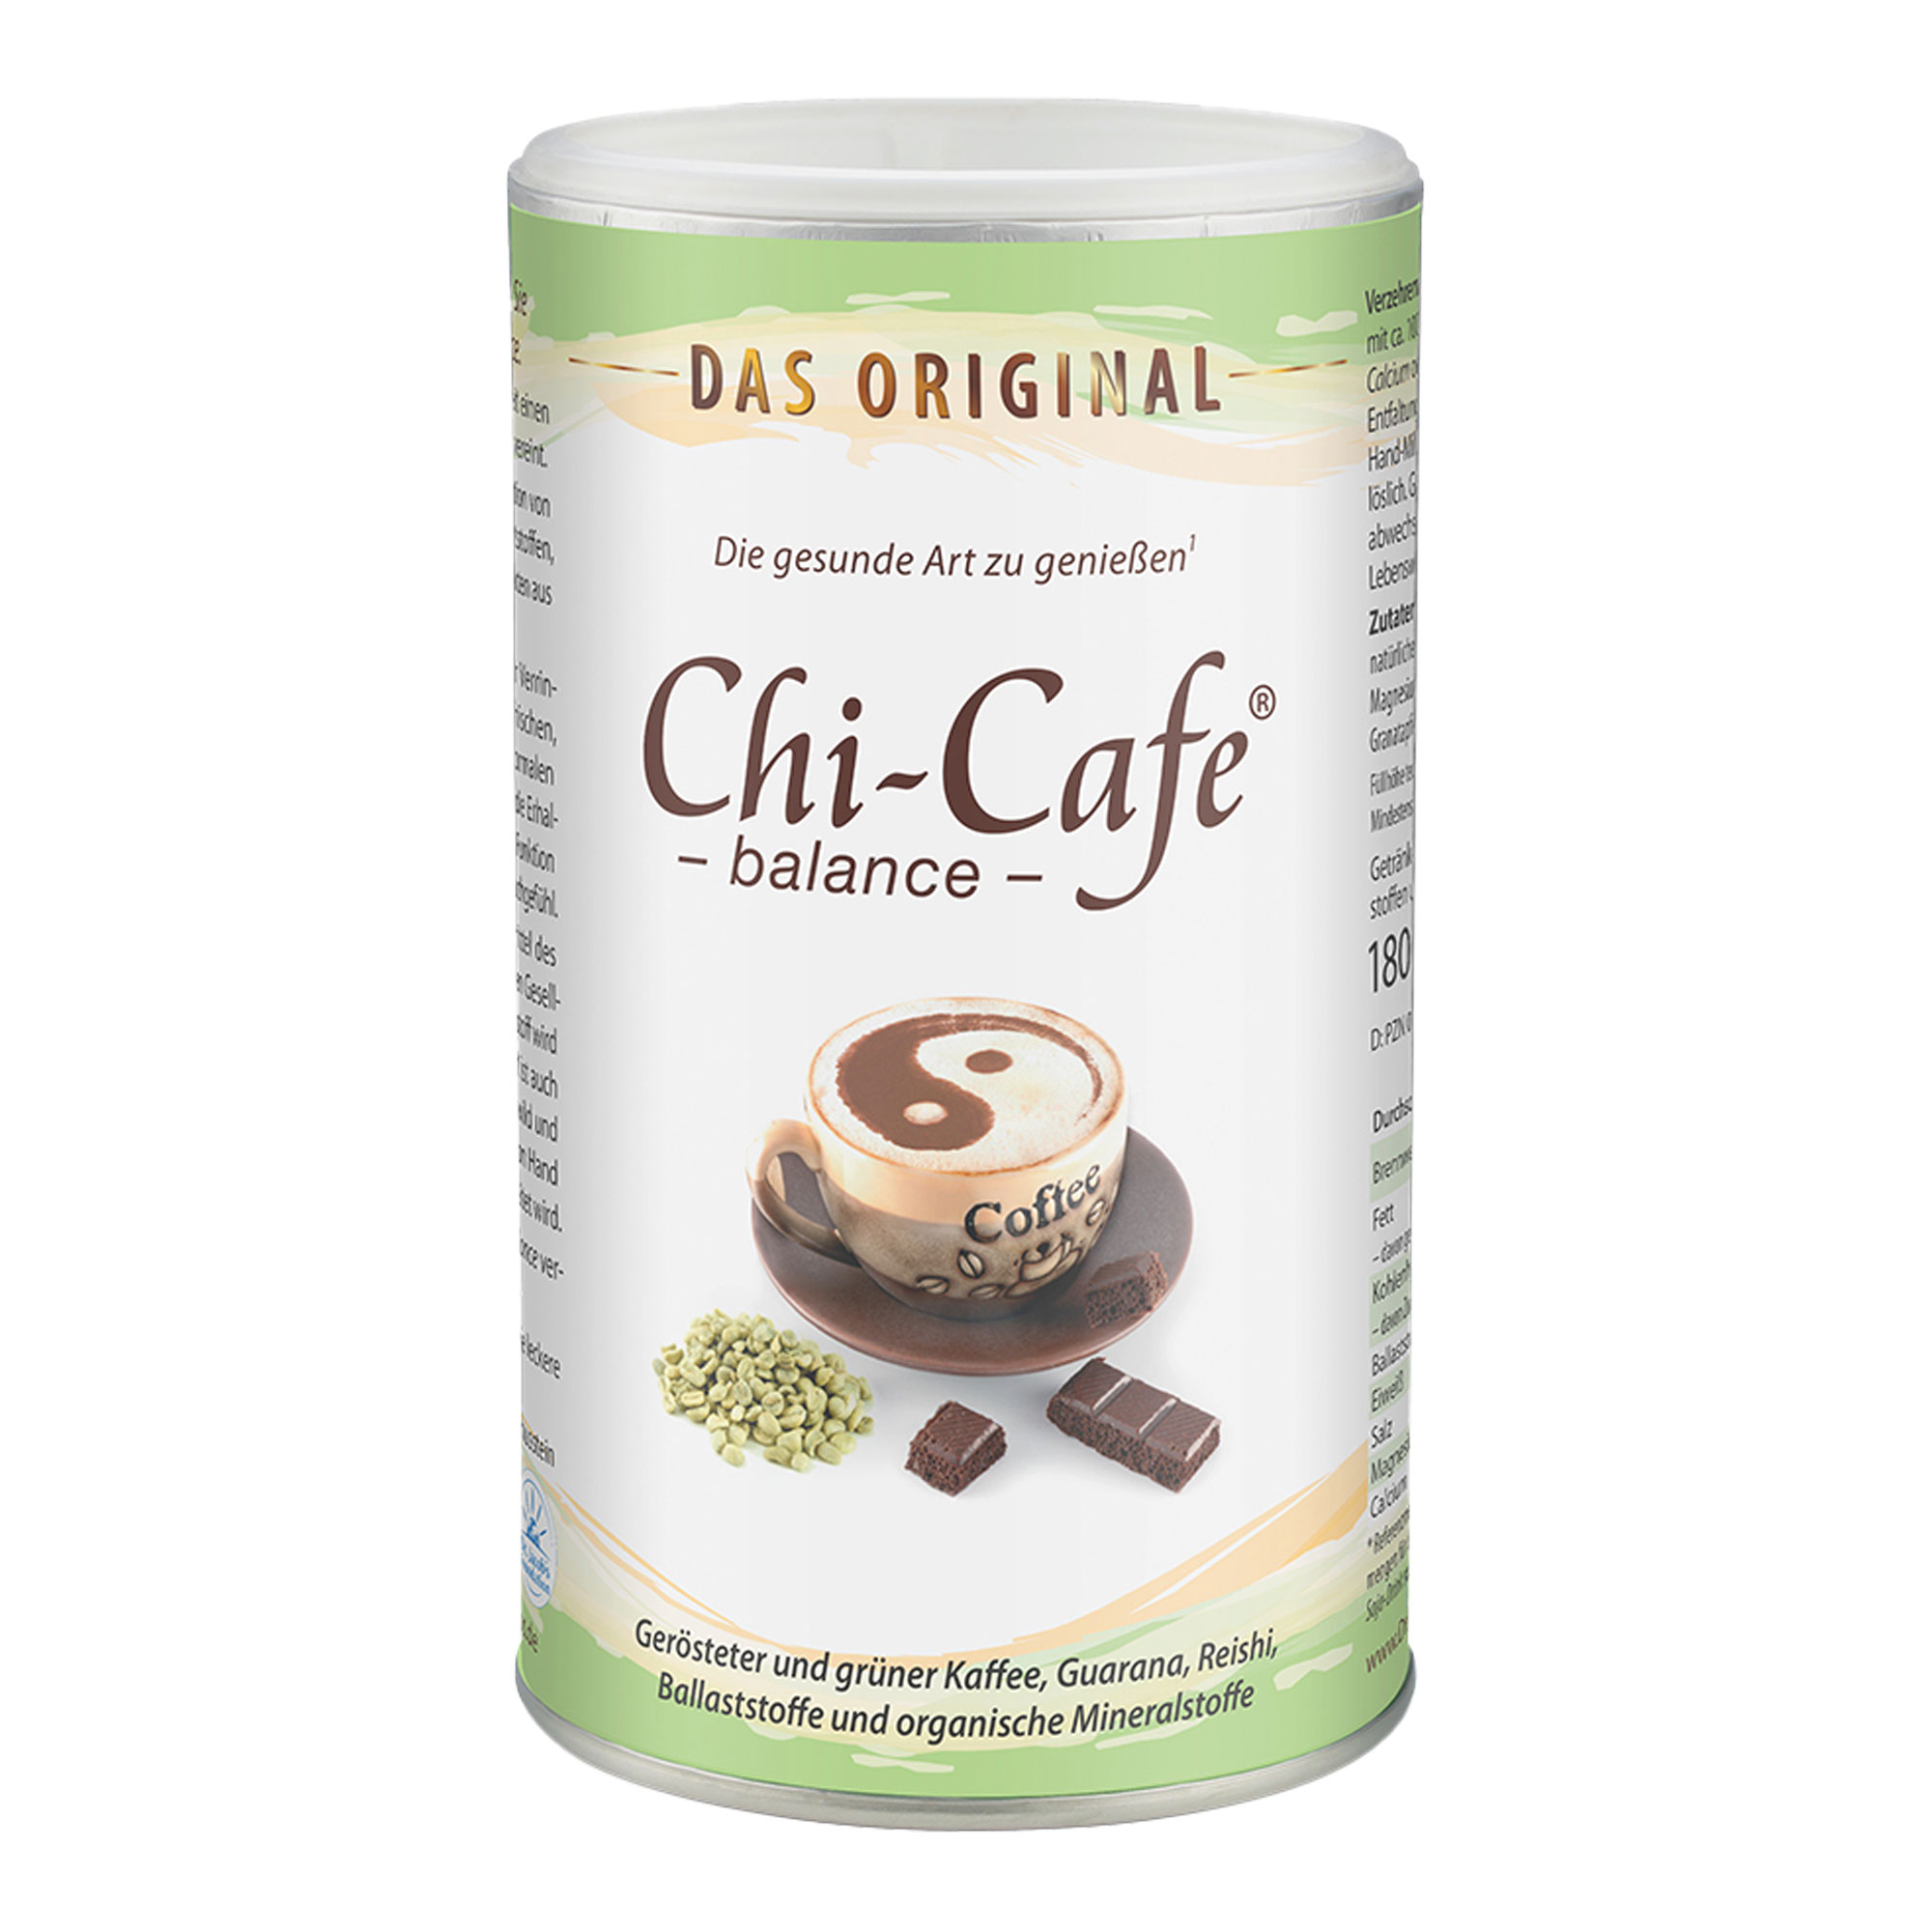 Milde Kaffee-Alternative: Ballaststoffe & Mineralstoffe - mit Koffein aus Kaffee und Guarana.